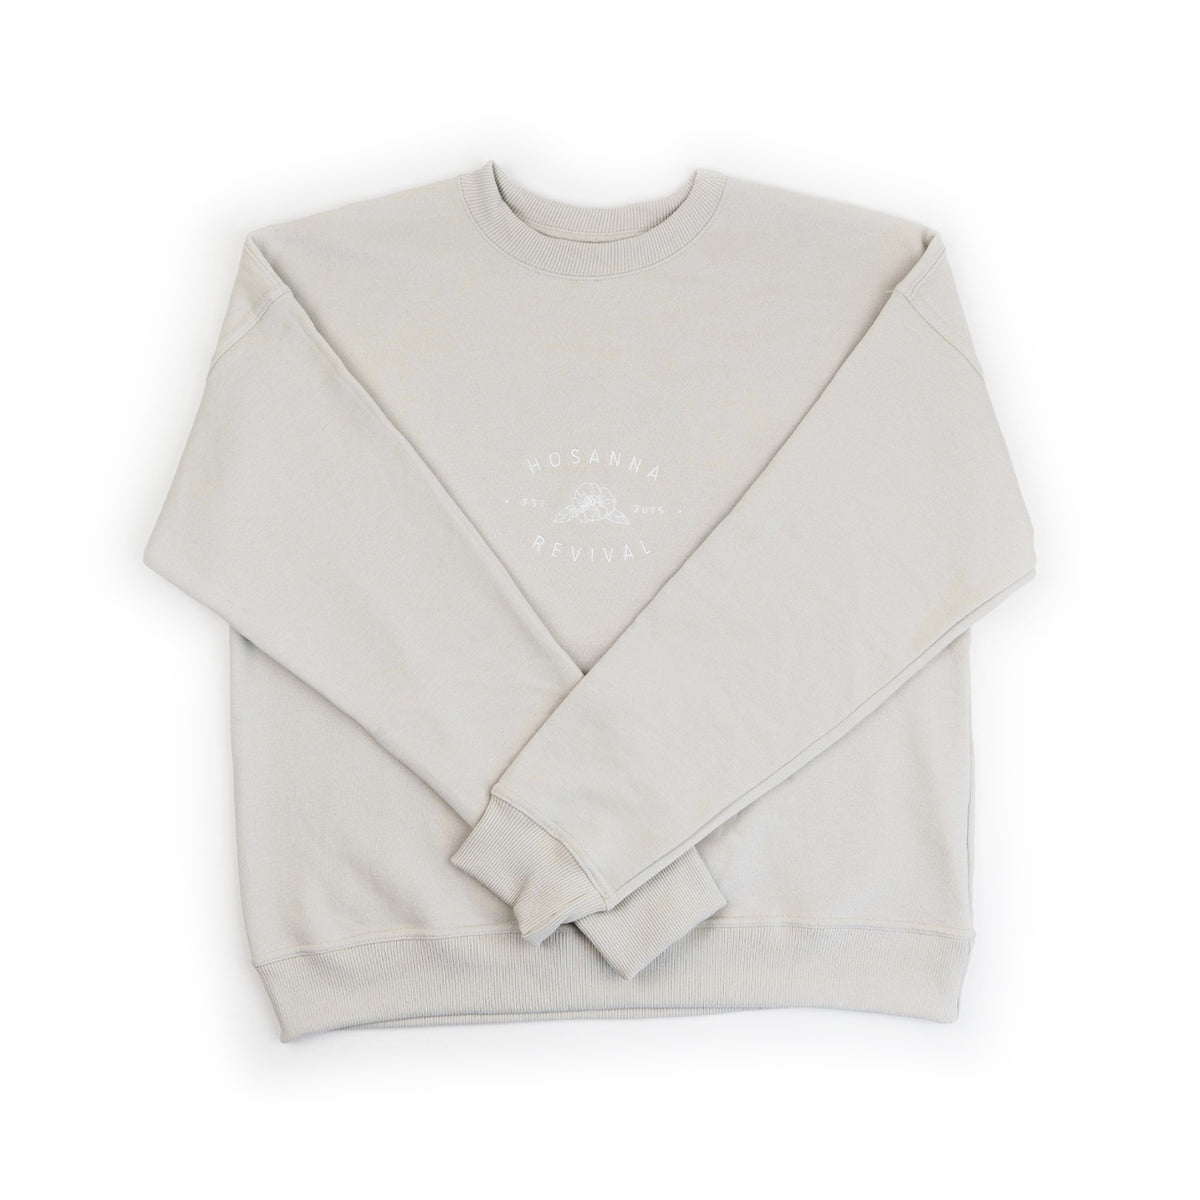 Hosanna Revival Sweatshirt: Oatmeal